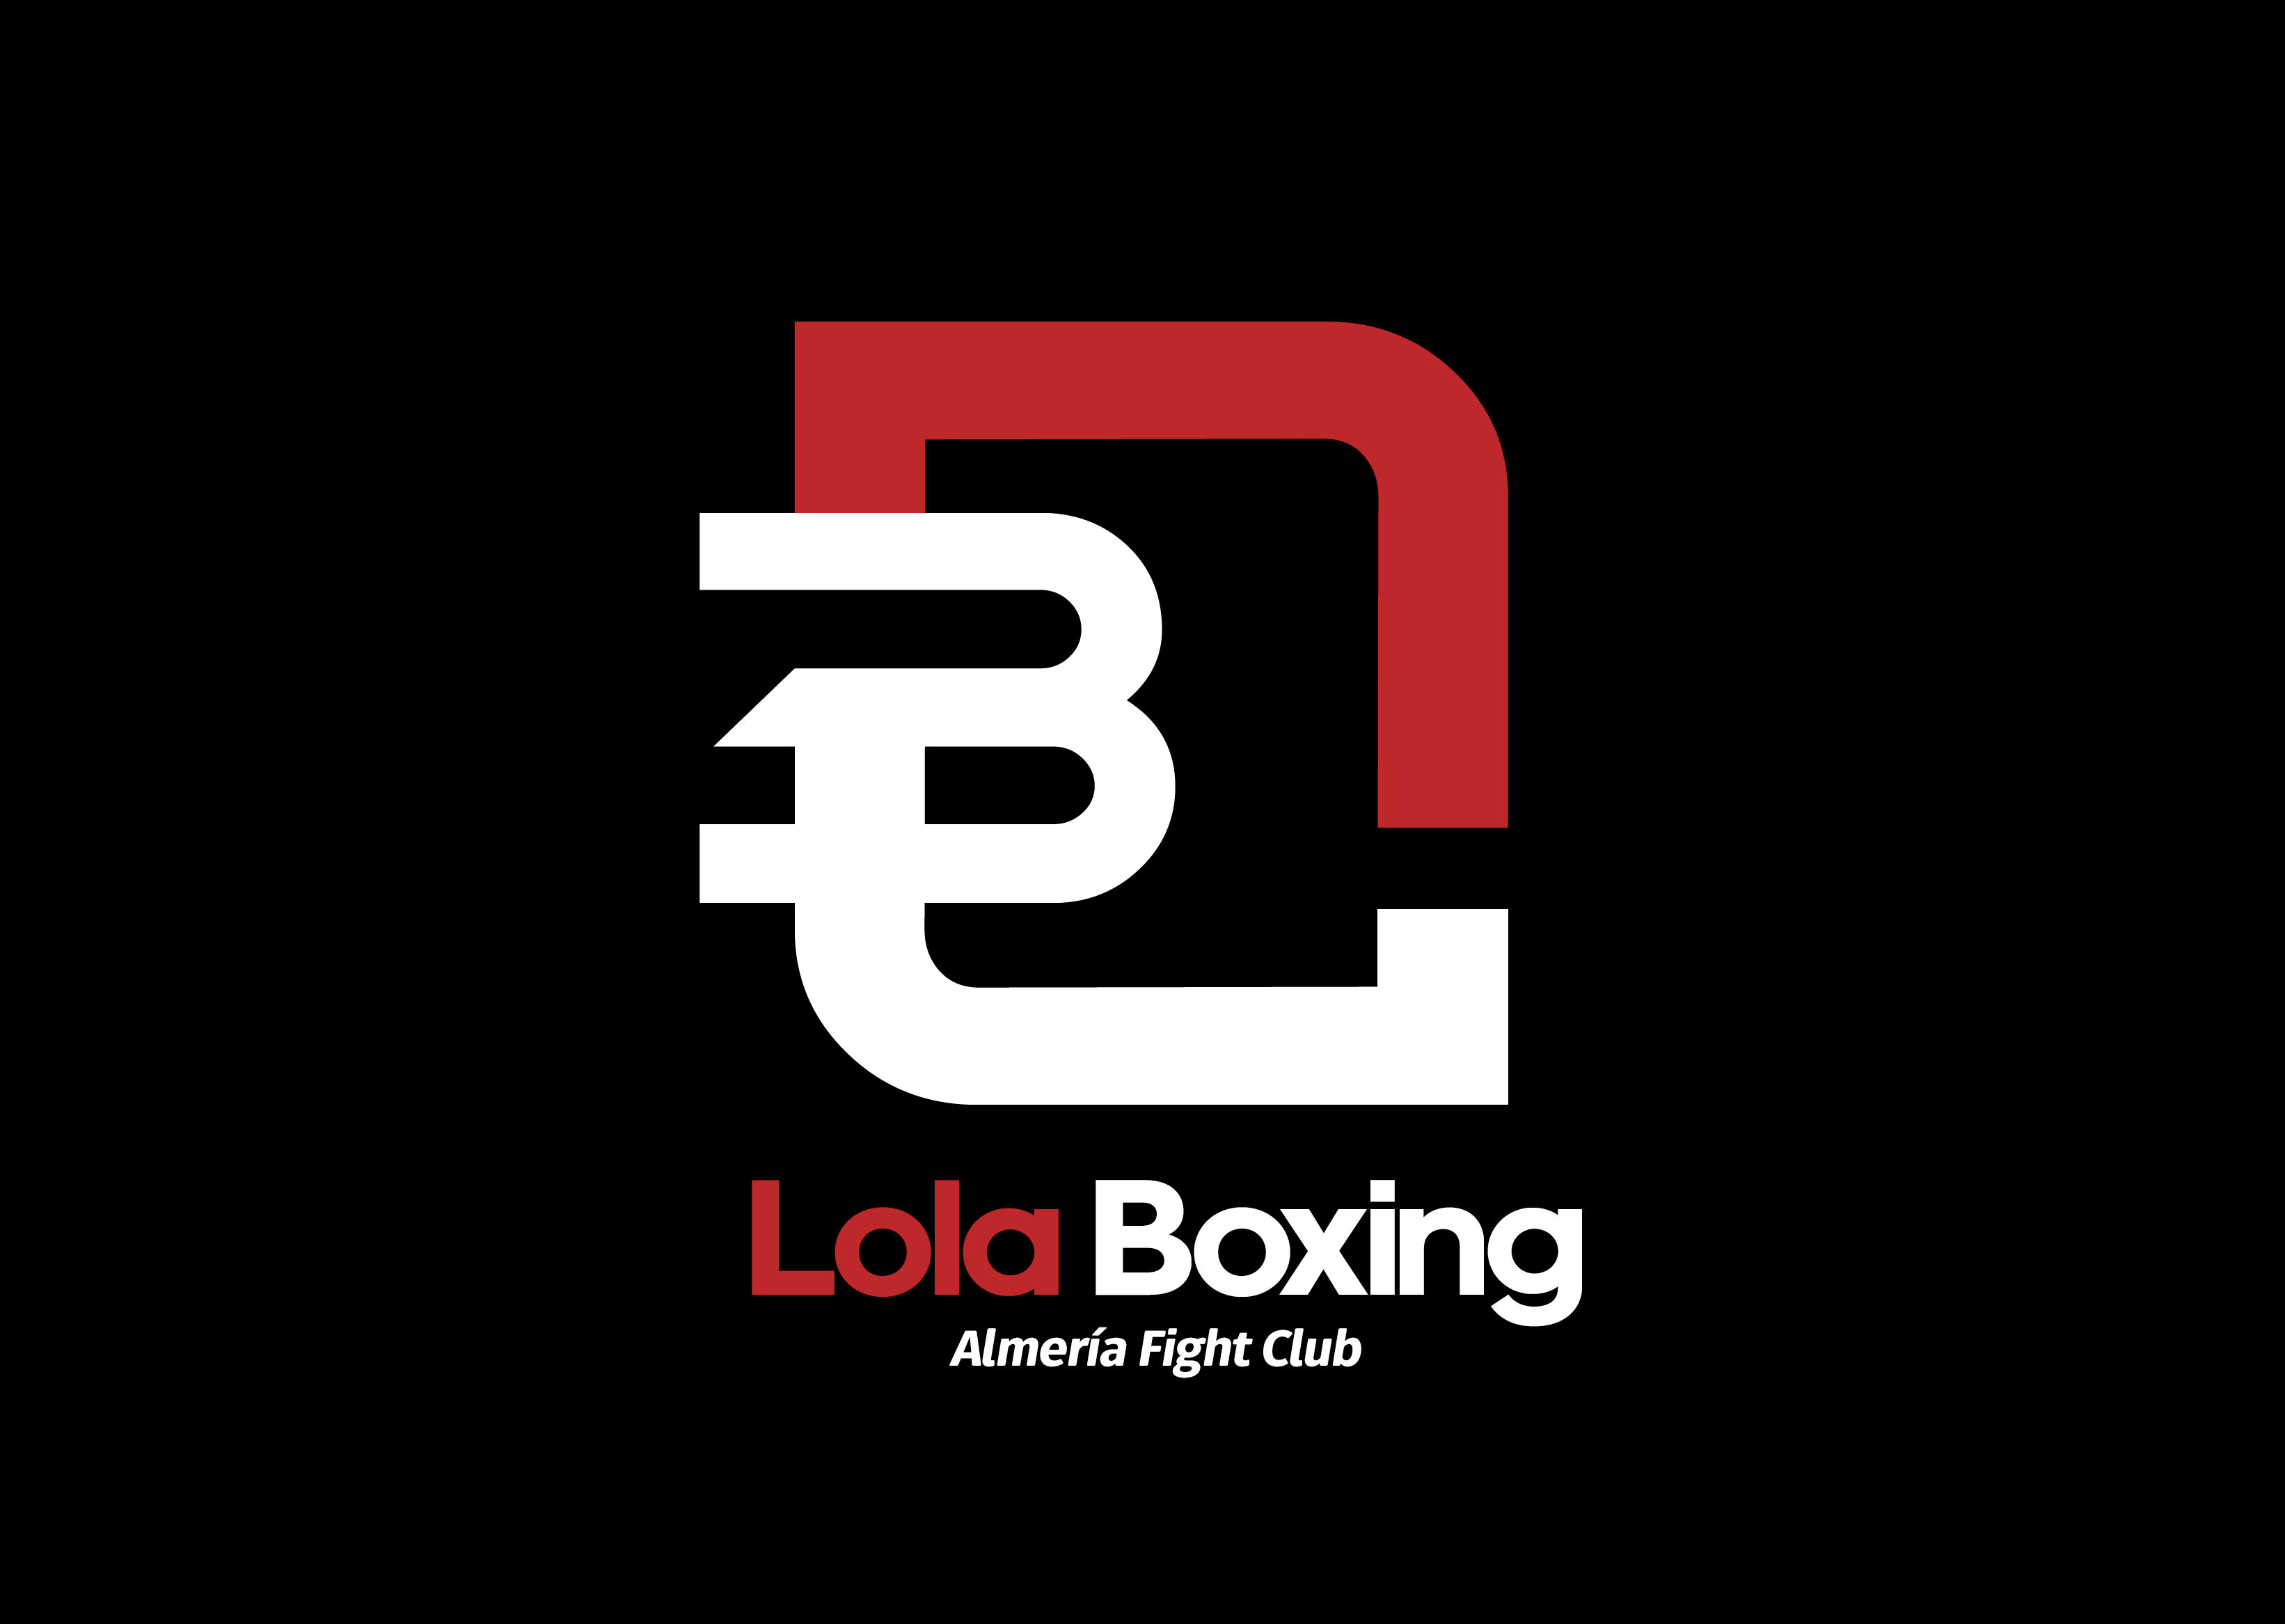 Club Lola Boxing